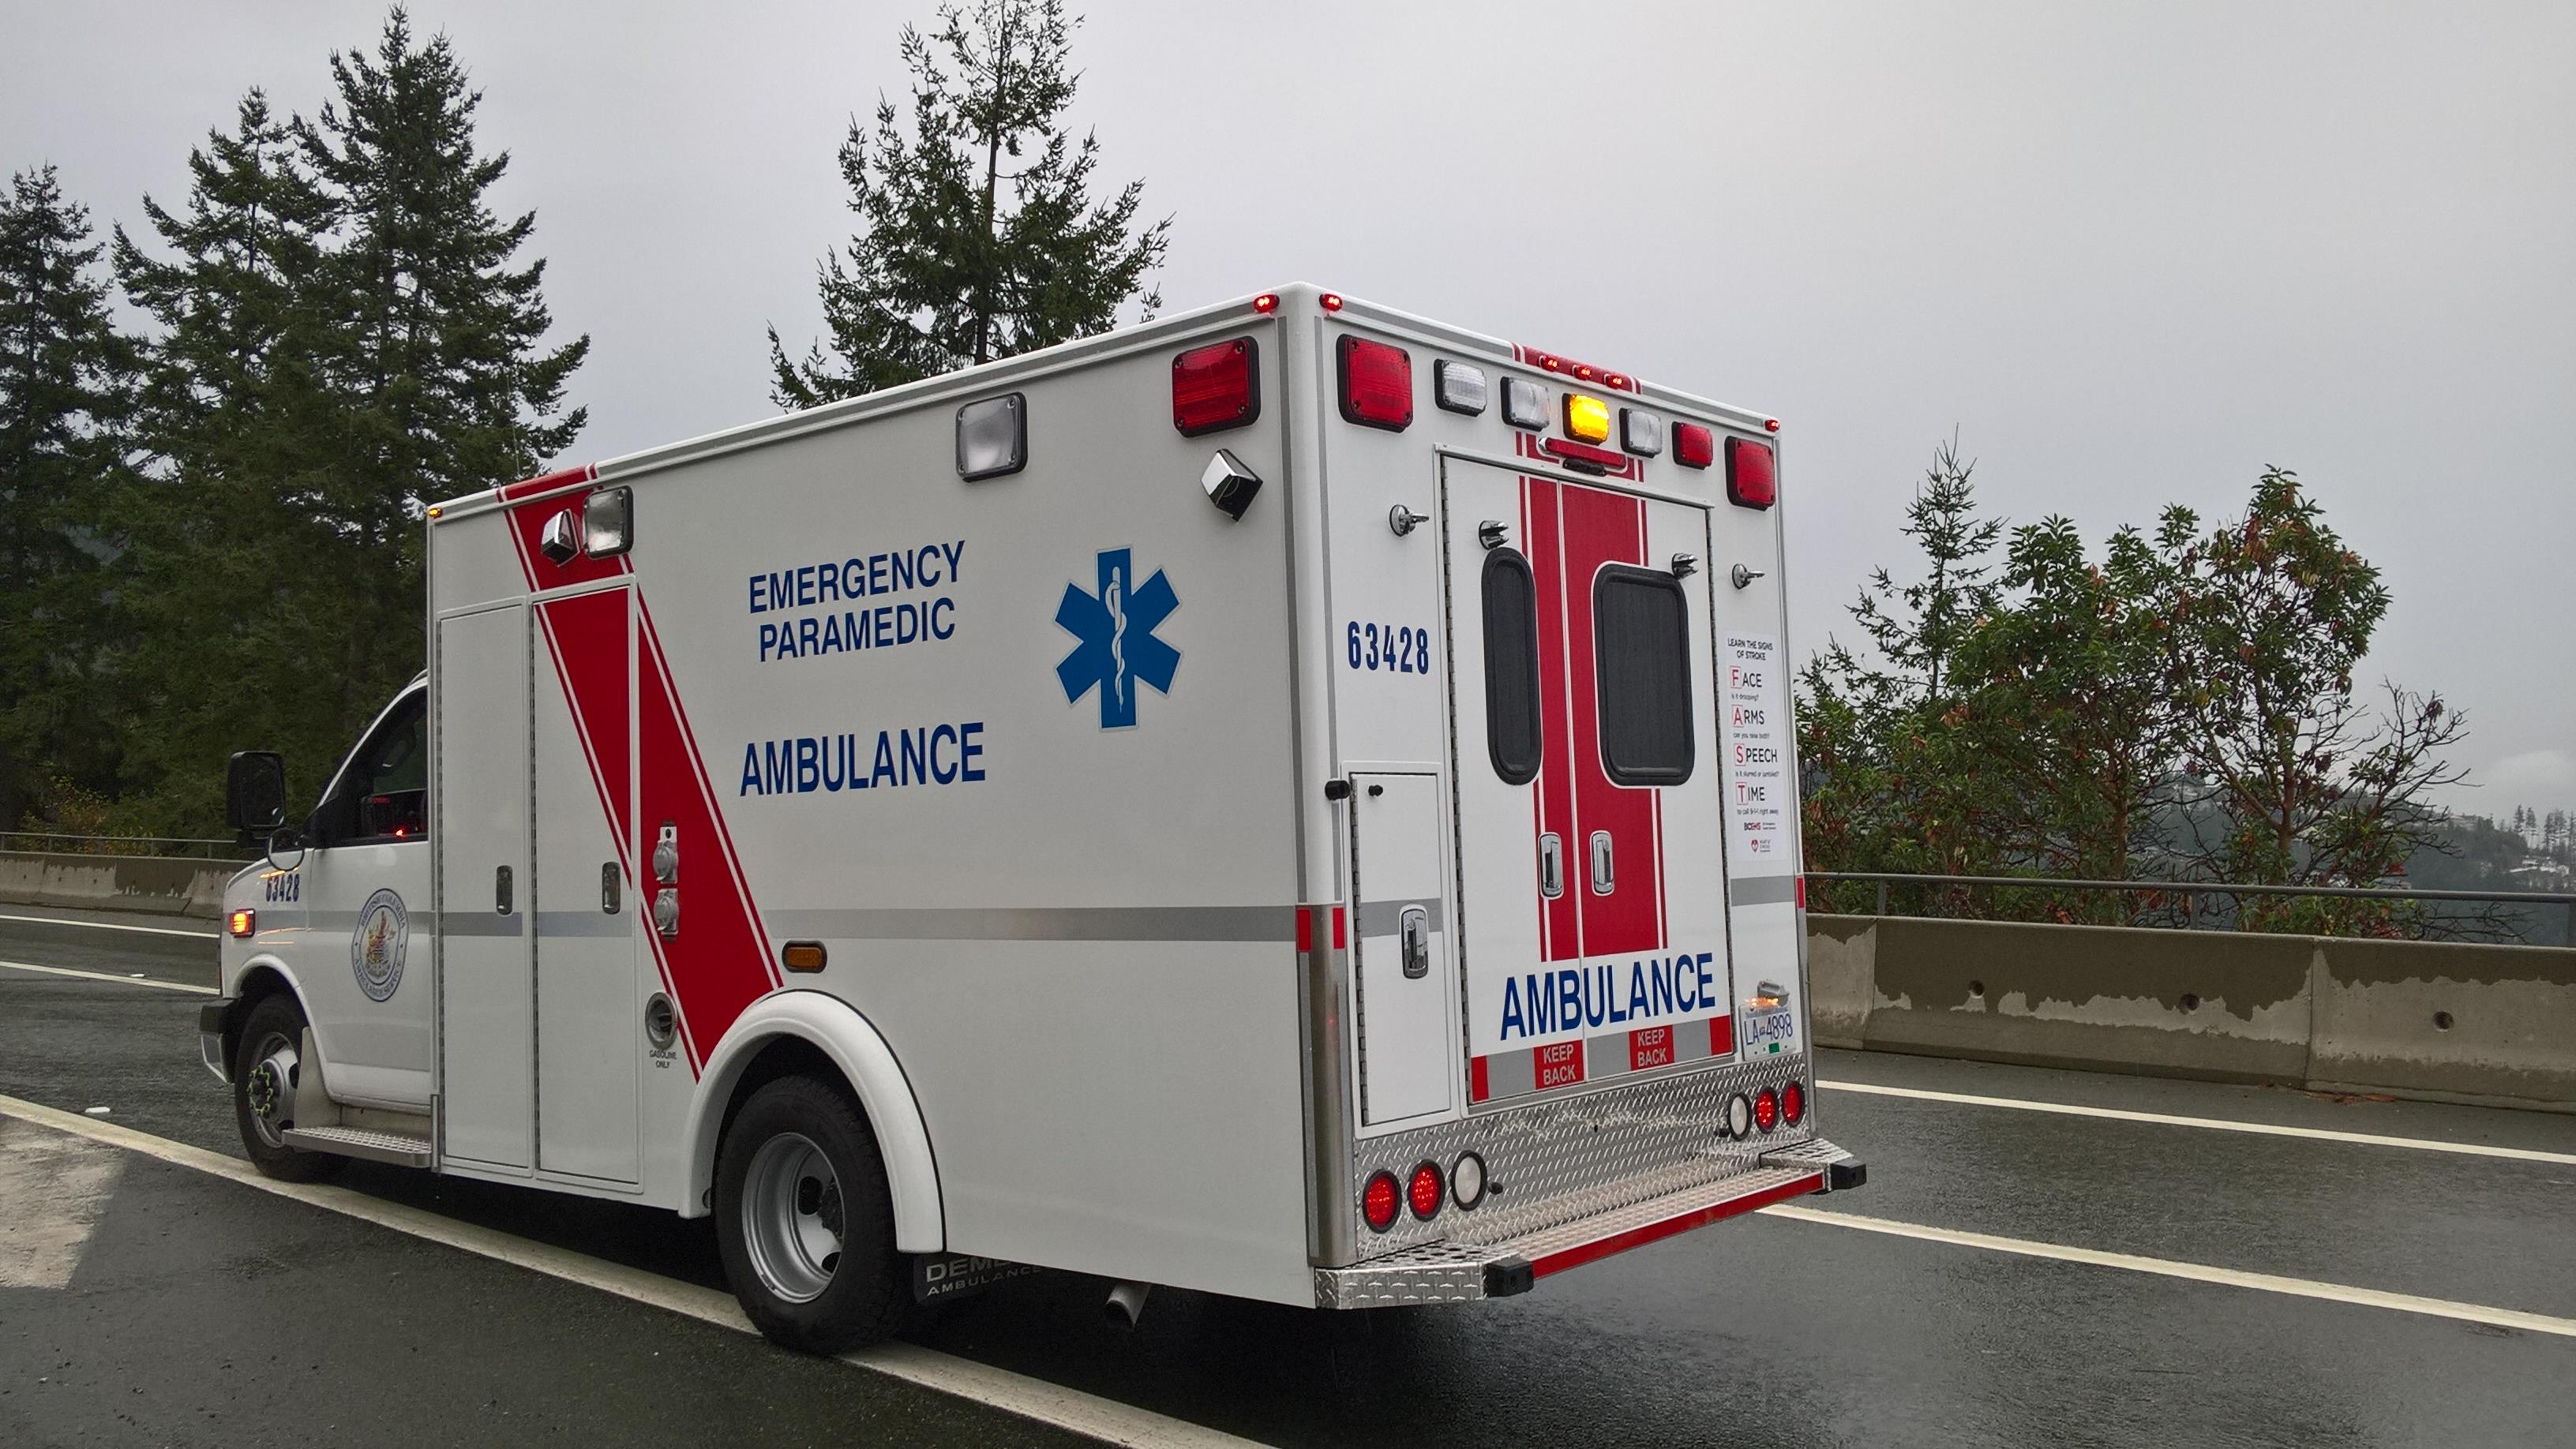 42 travailleurs hospitalisés à la suite d'une importante fuite de gaz près de Vancouver